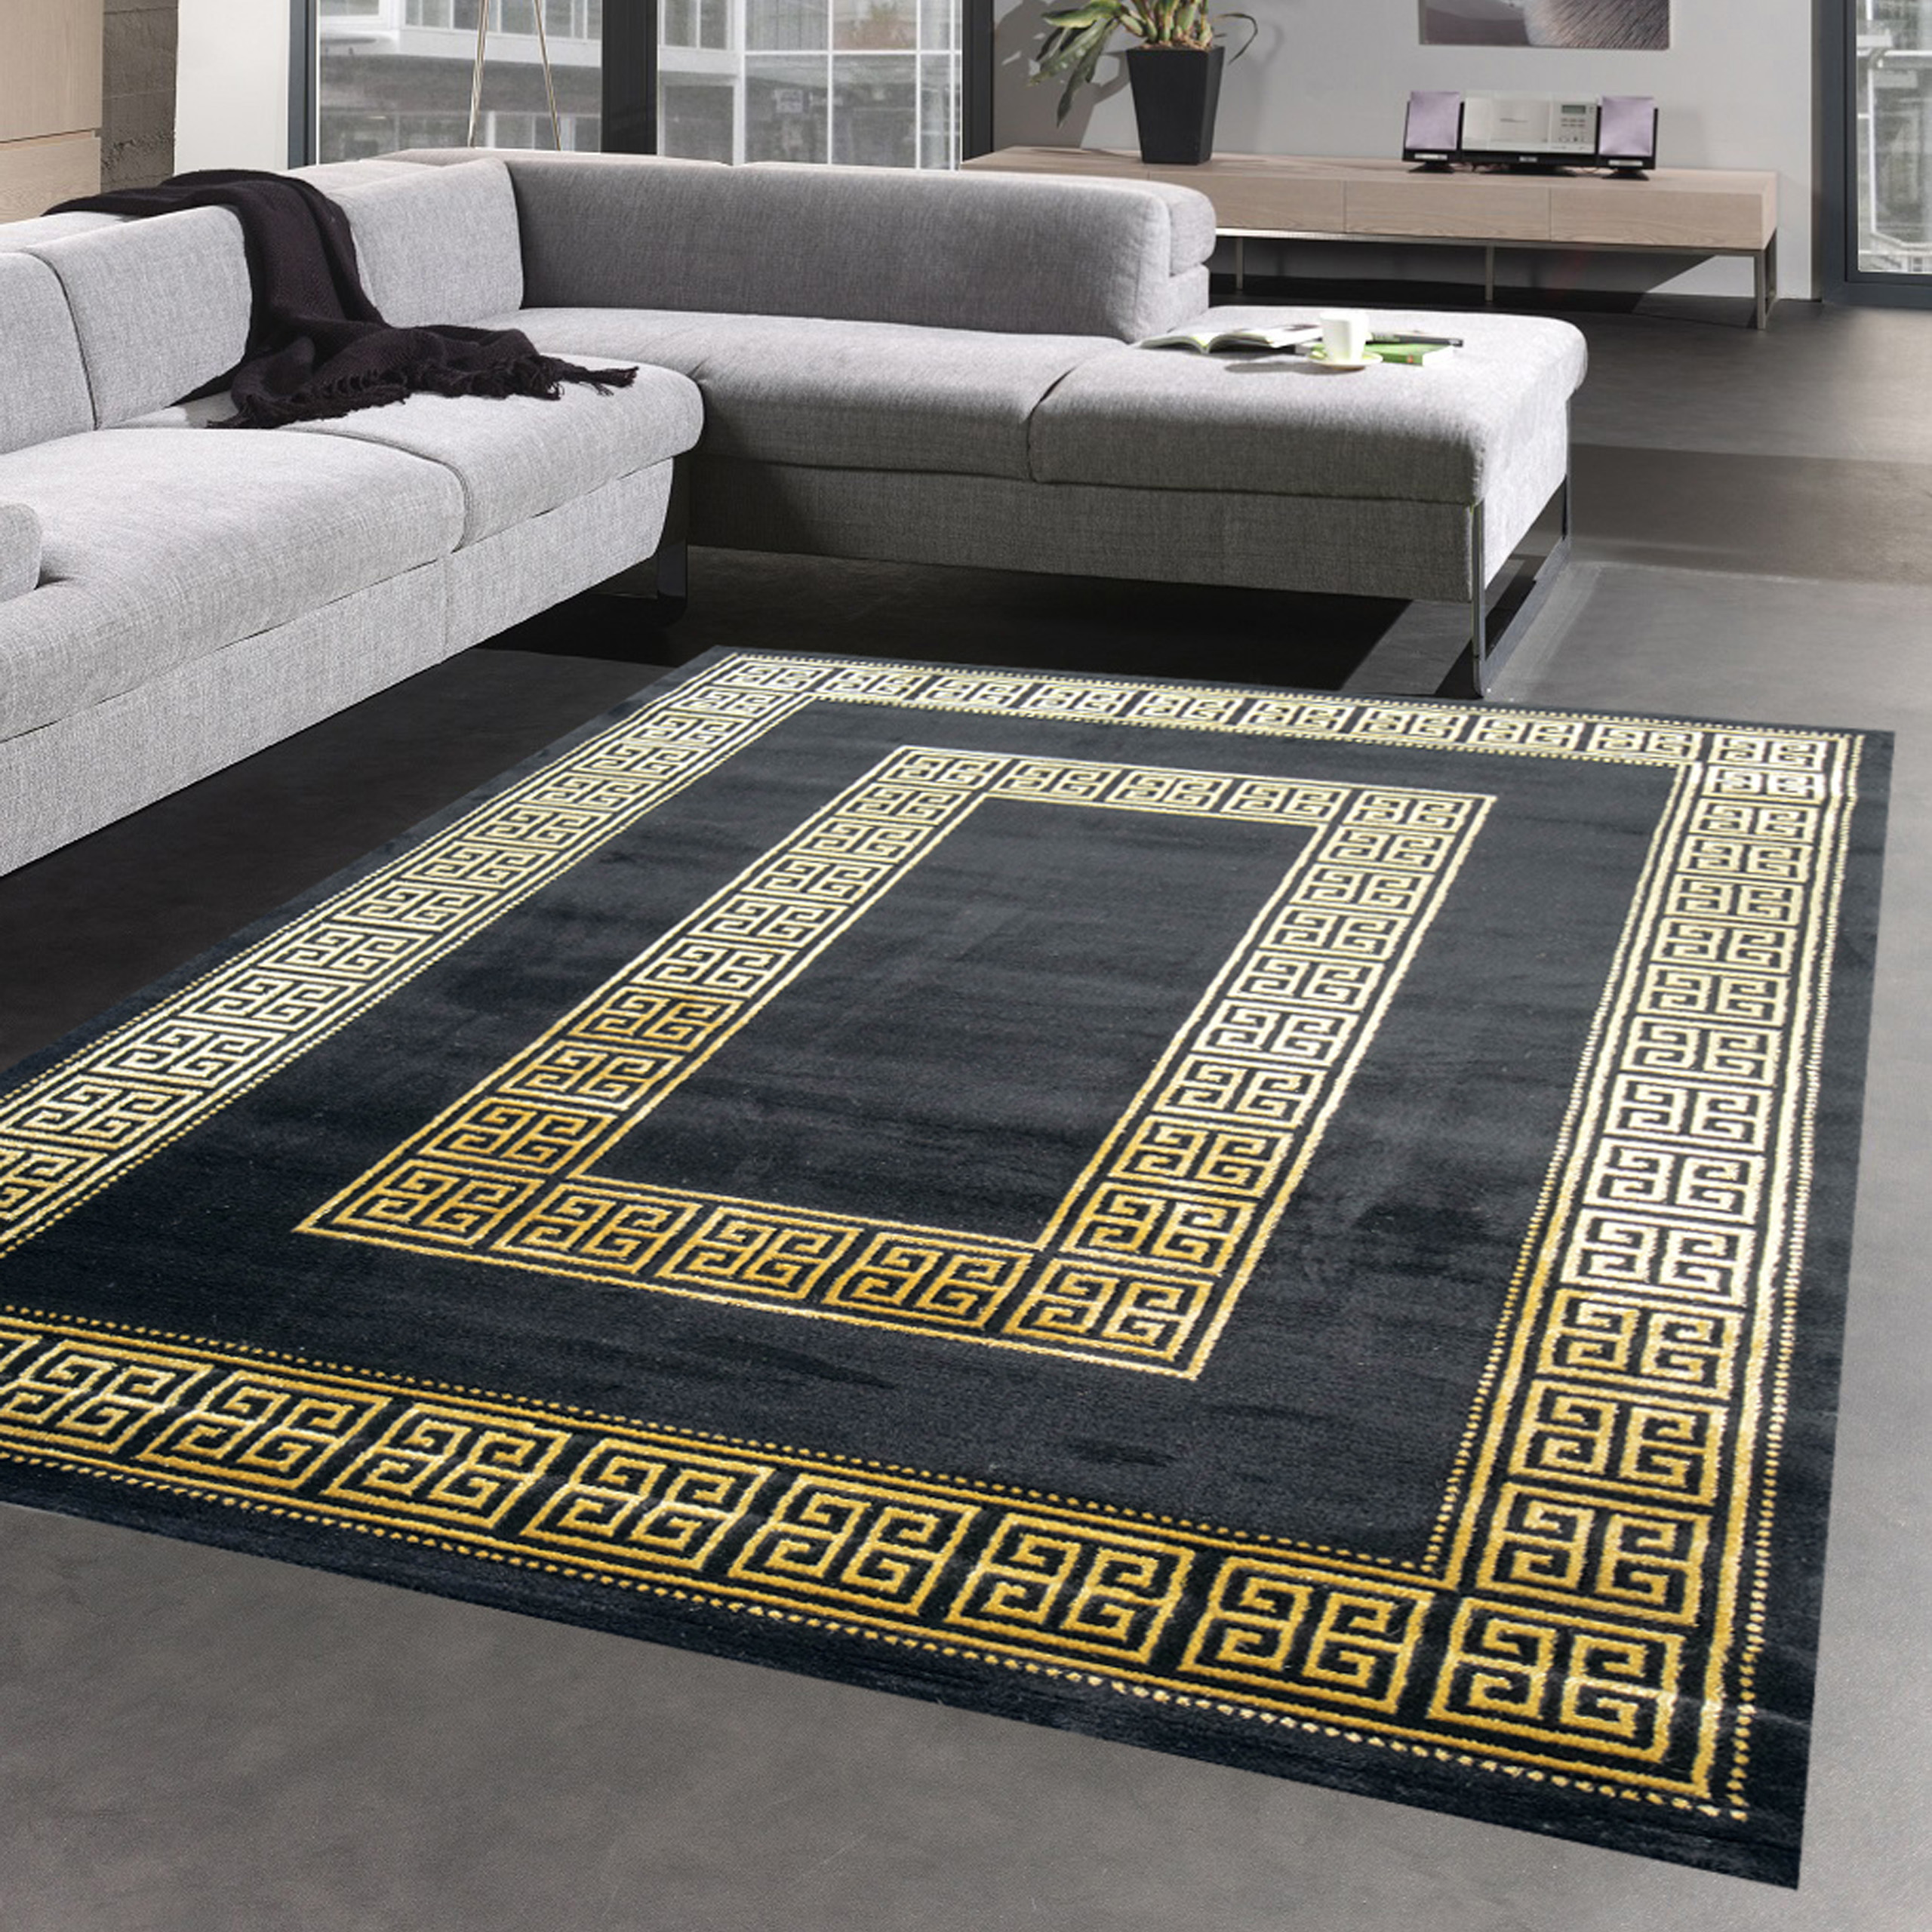 Teppich mit klassischer Bordüre in schwarz gold 